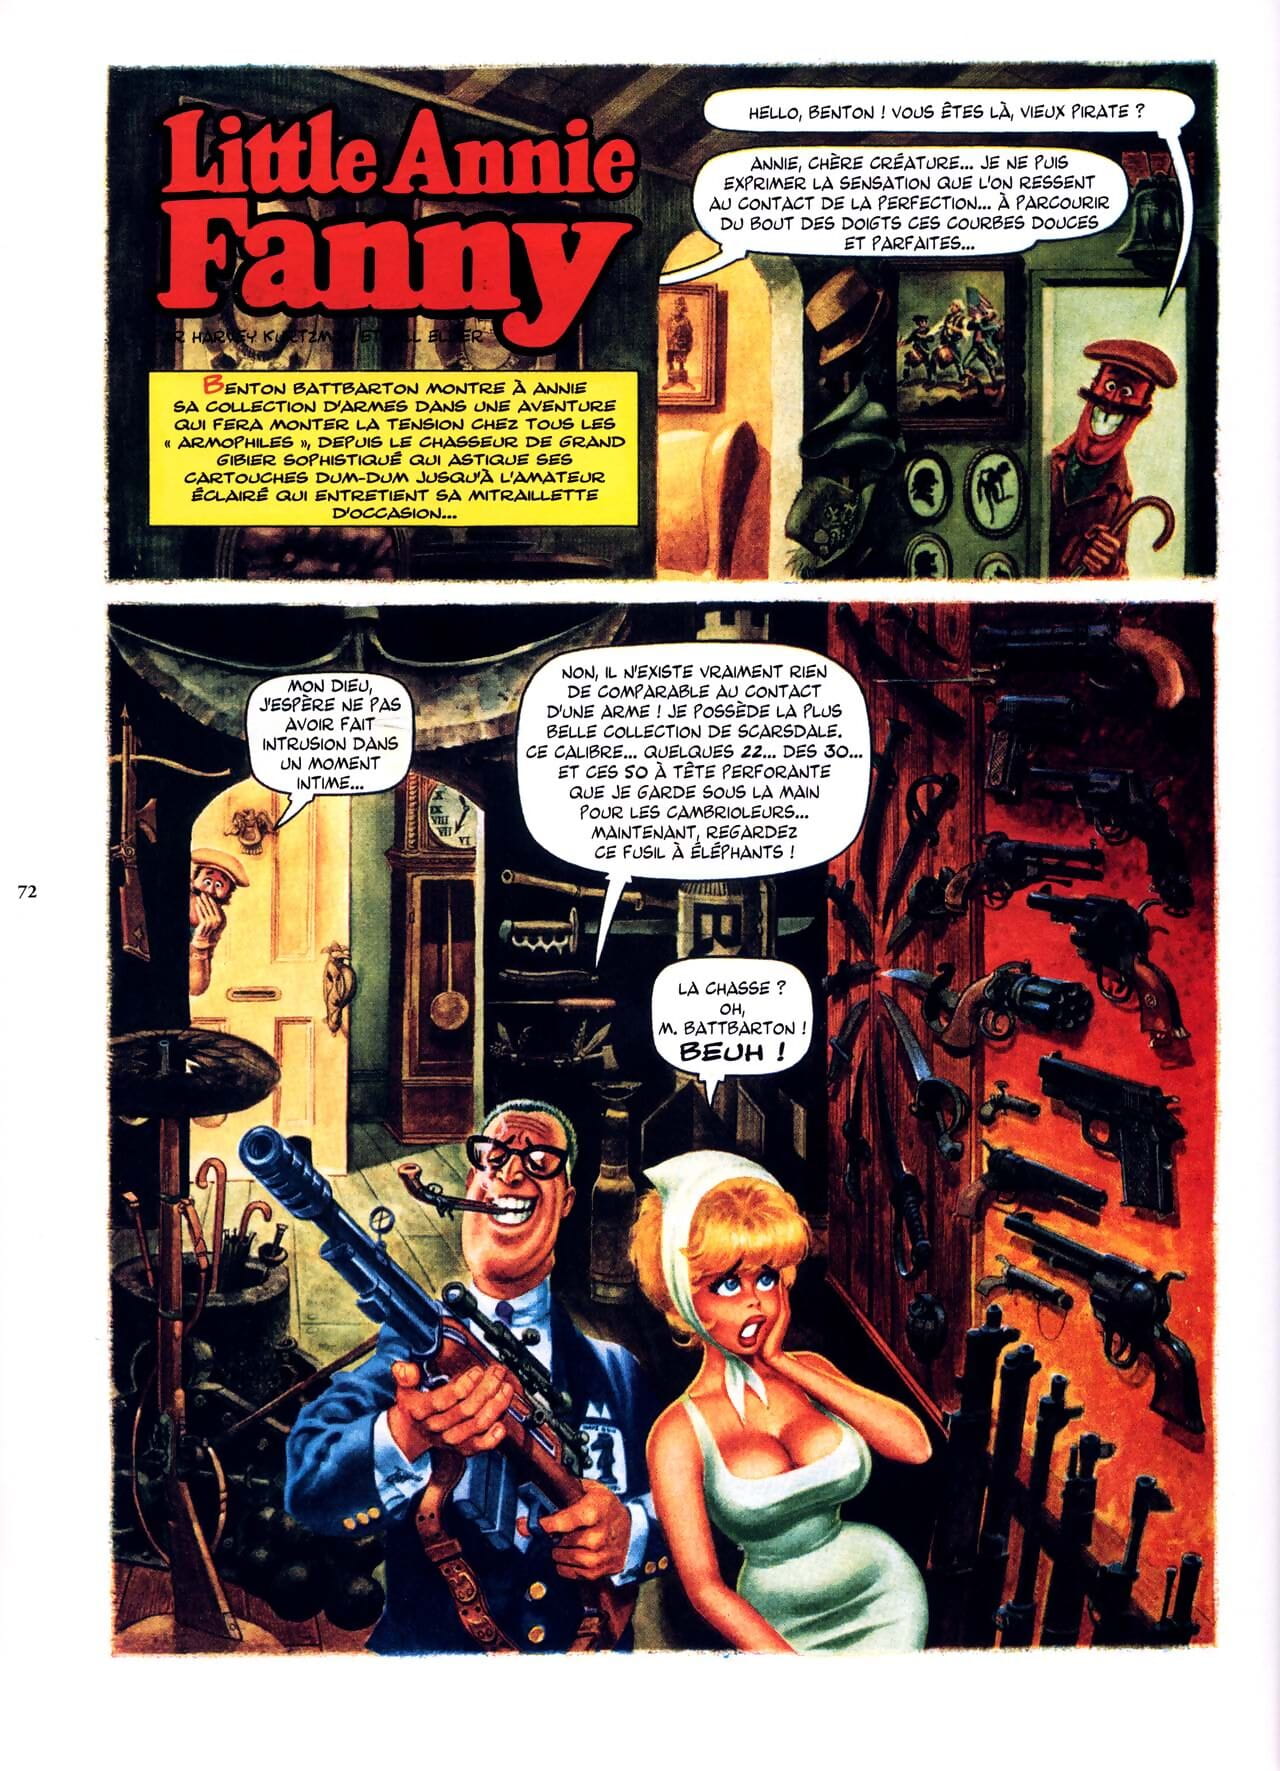 น้อย แอนนี่ fanny vol 1 - 1962-1965 - ส่วนหนึ่ง 4 page 1